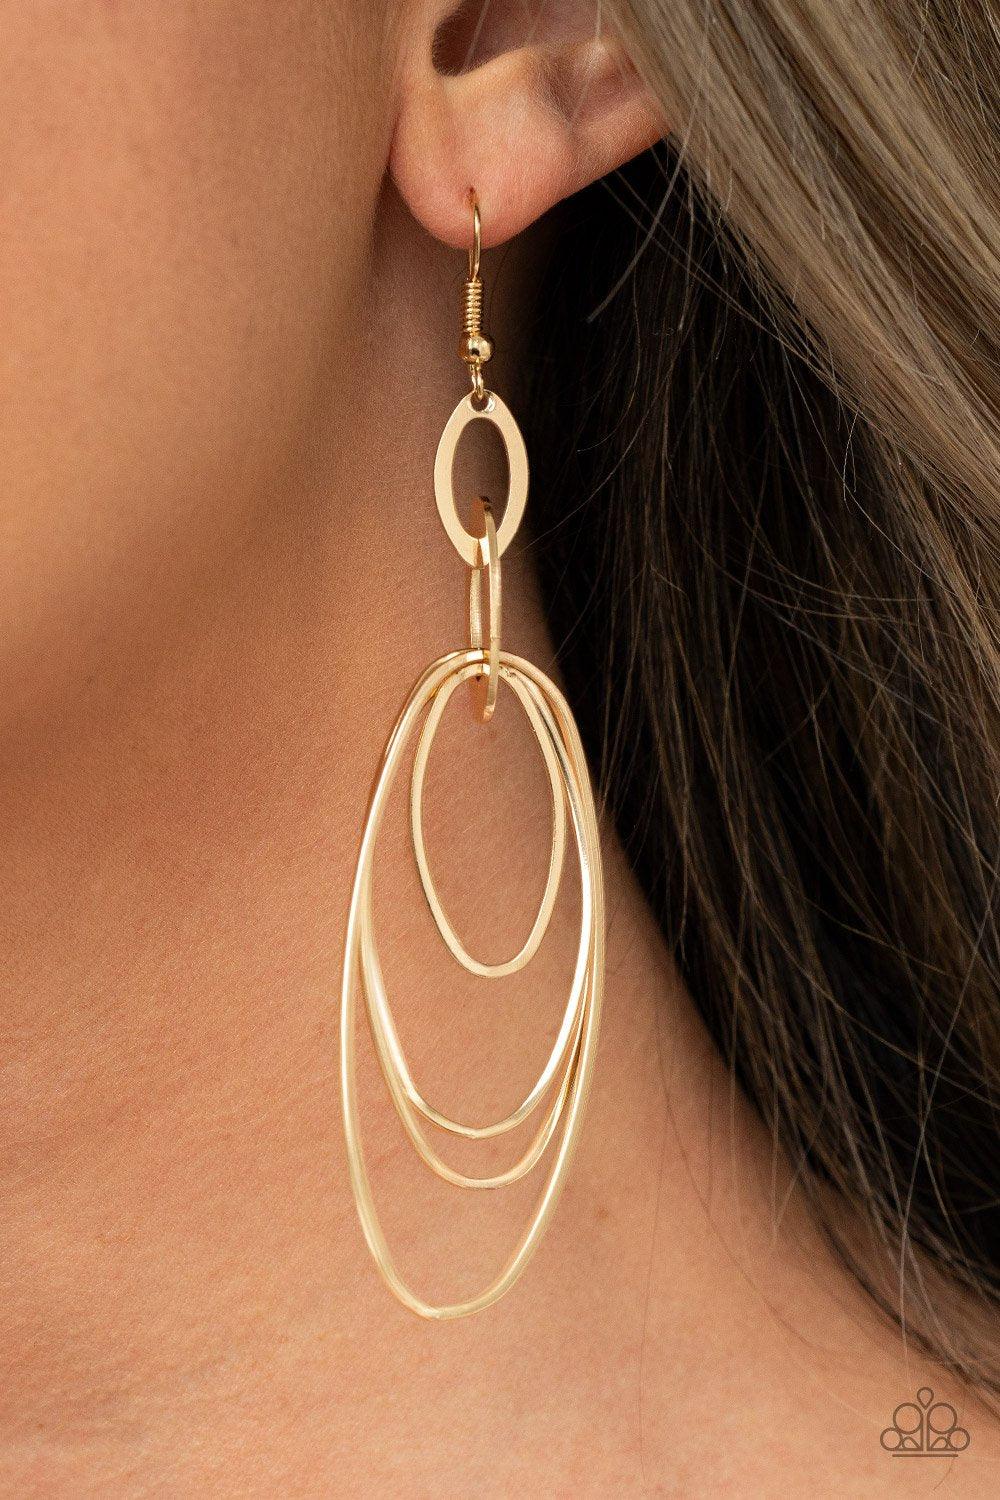 OVAL The Moon Gold Earrings - Jewelry by Bretta